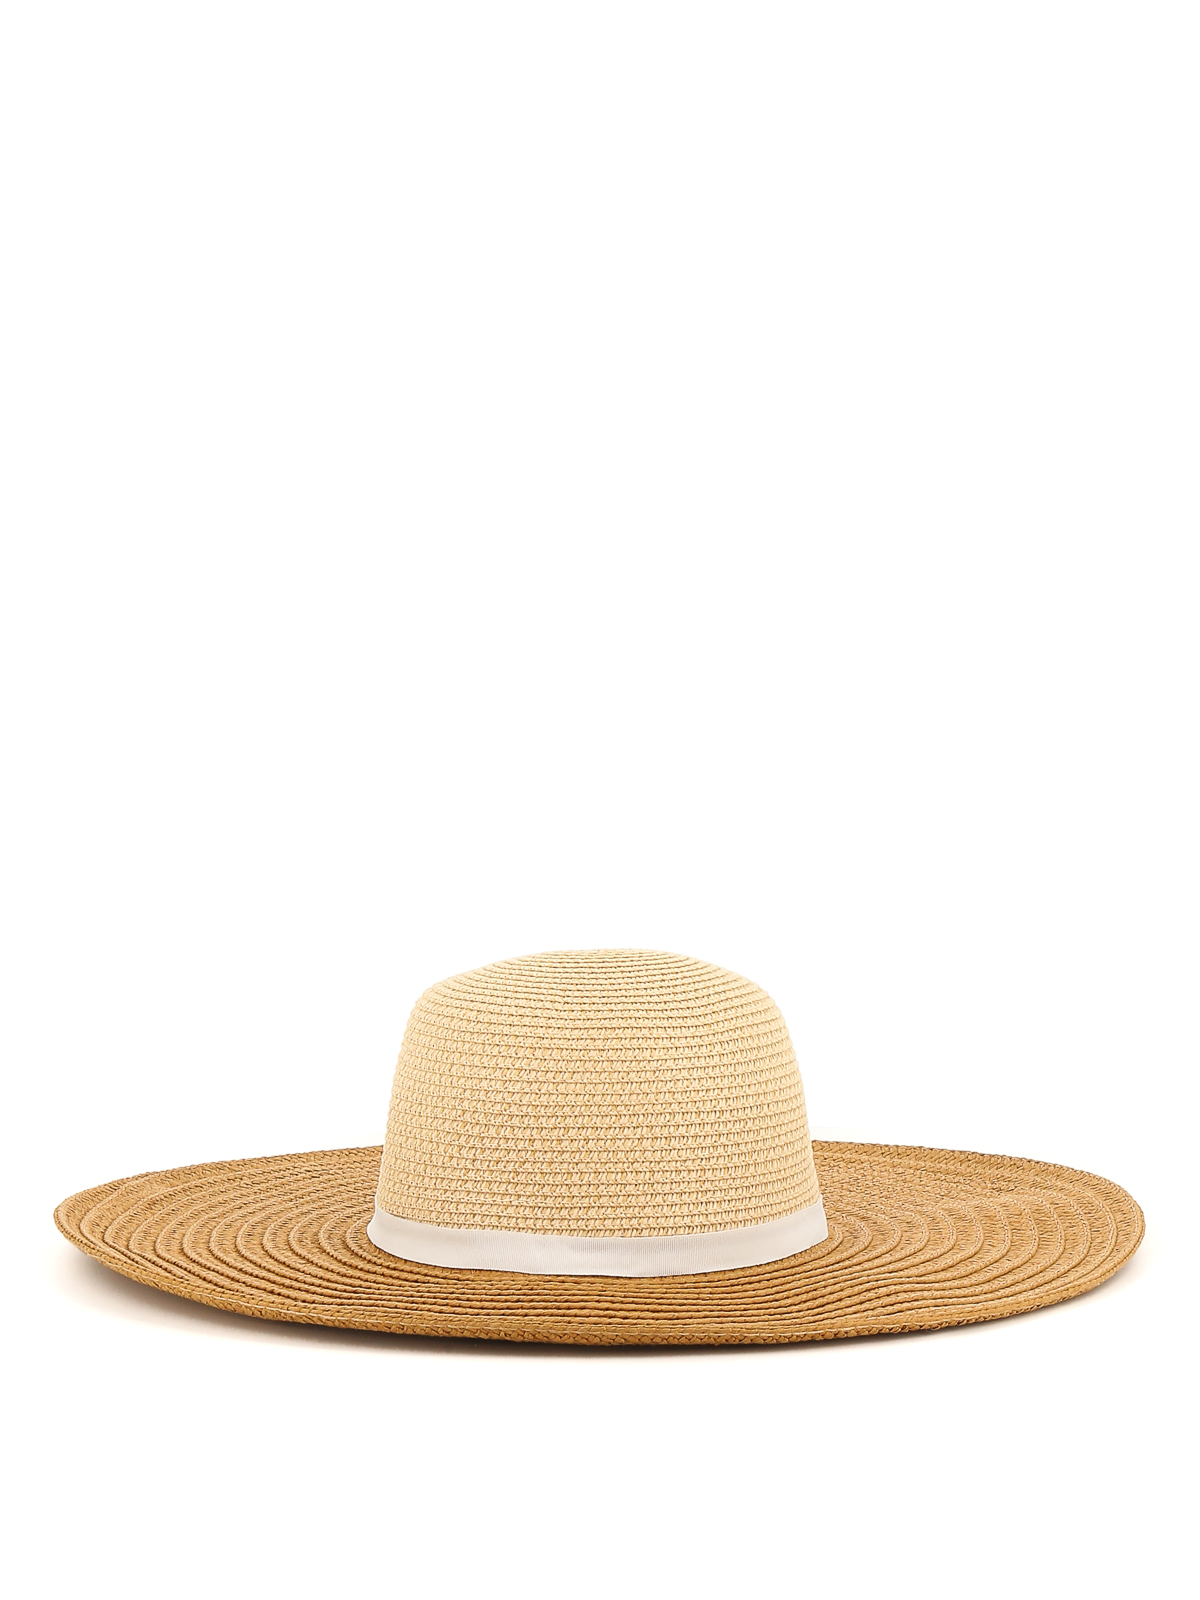 Hats & caps Lauren Ralph Lauren - Branded straw hat - 454872673001